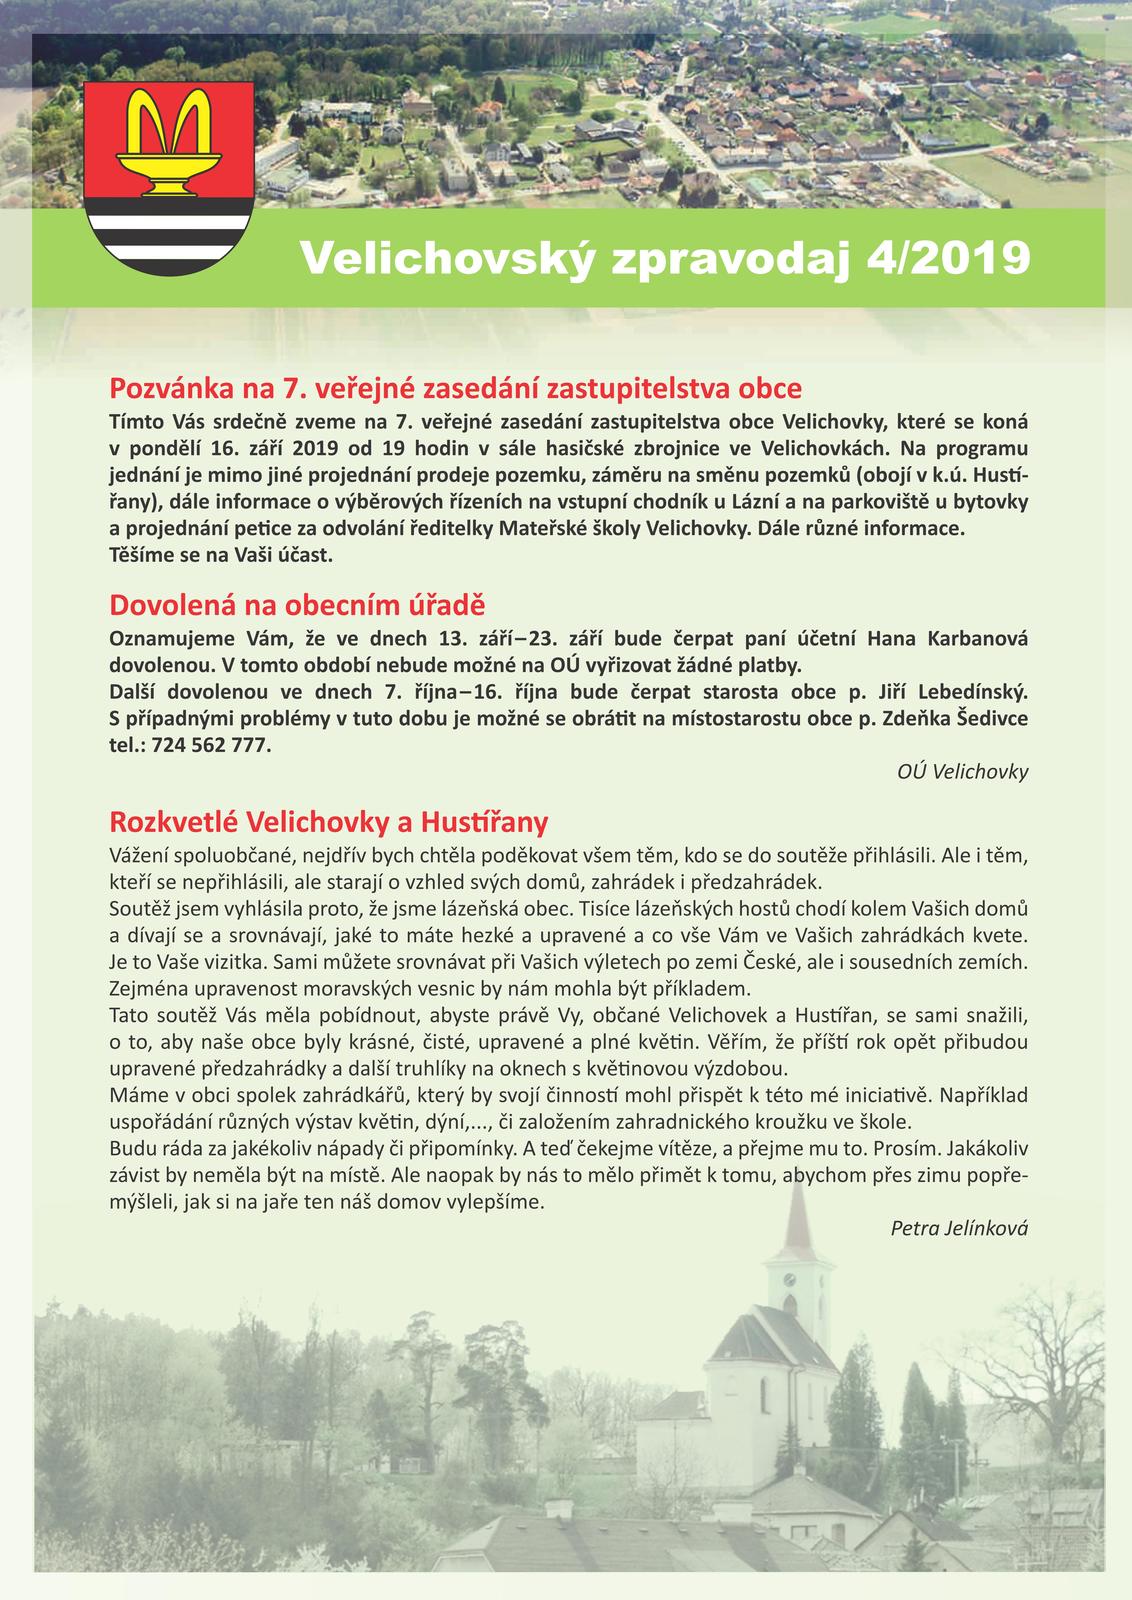 Velichovský zpravodaj 04-2019